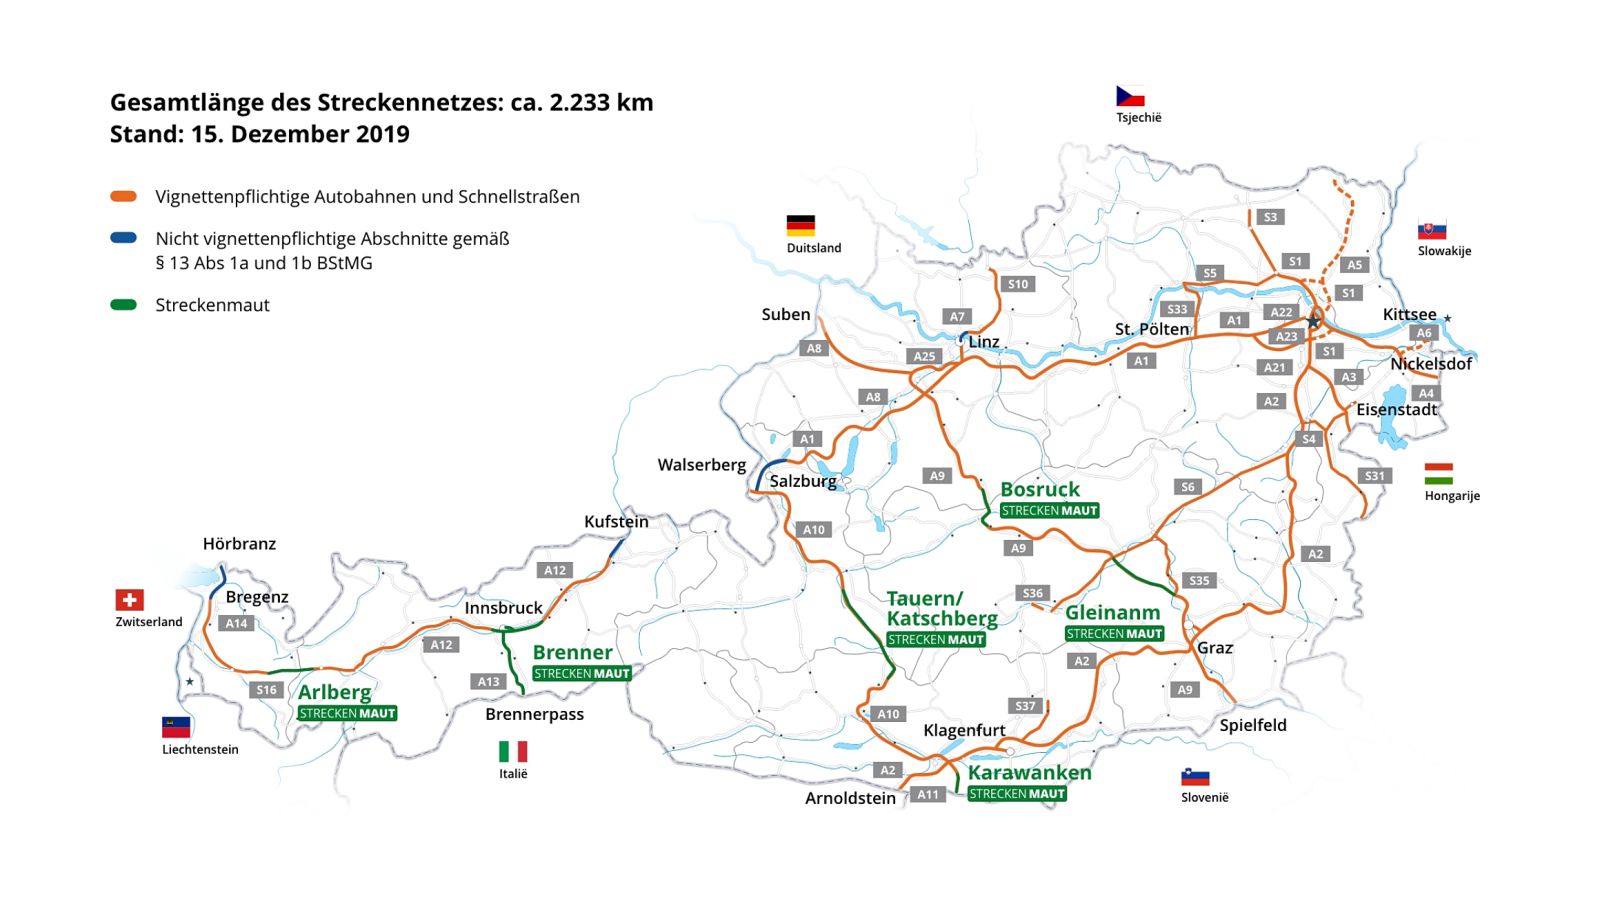 Strecken in Österreich ohne Maupflicht